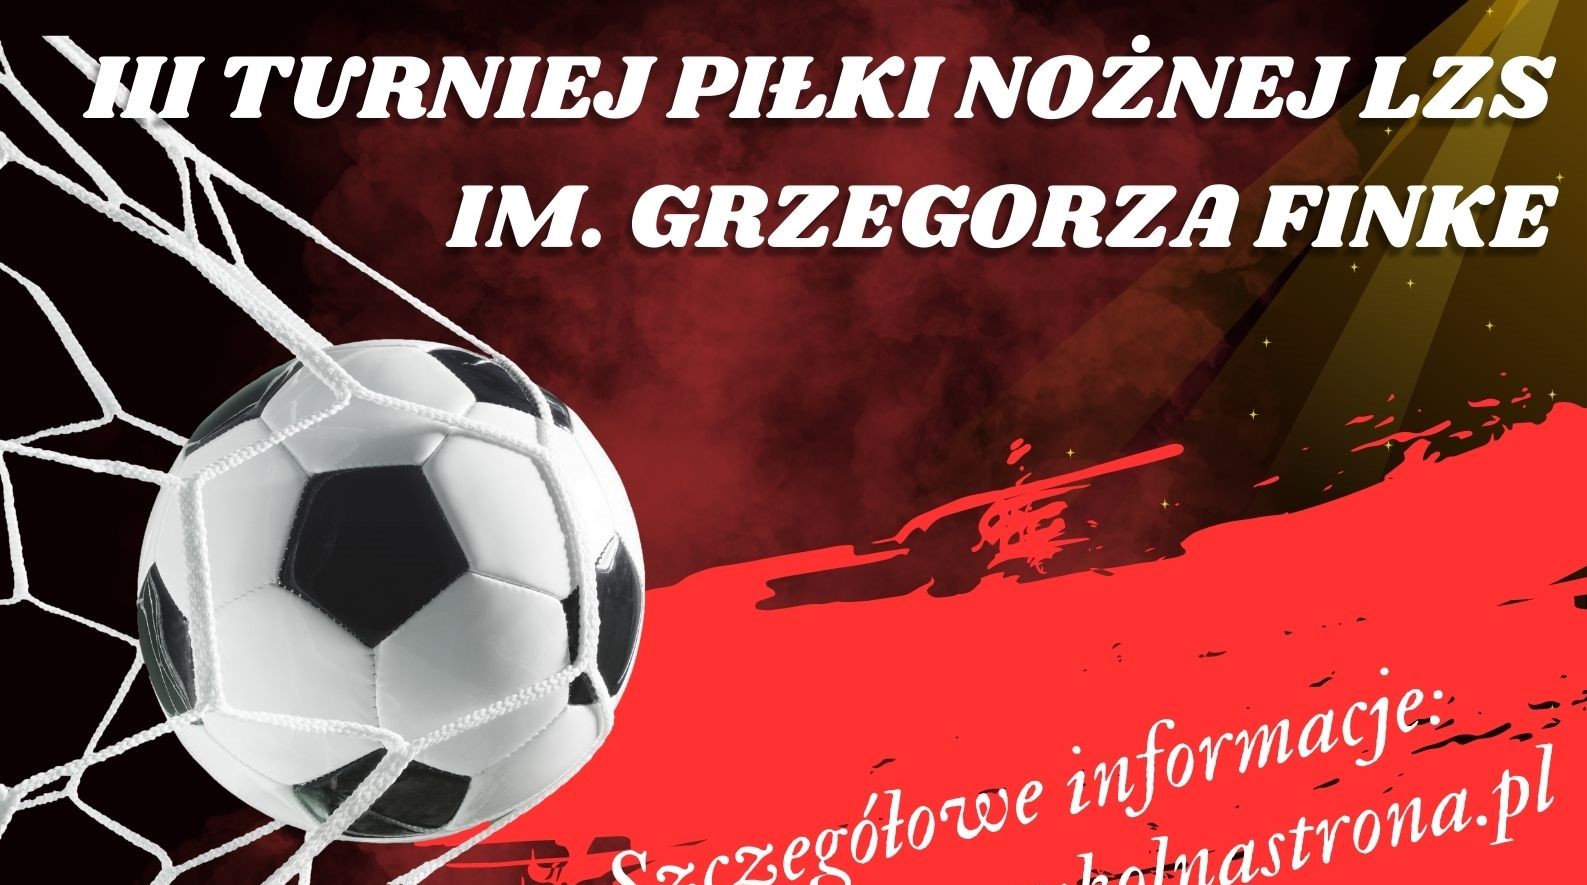 Zapraszamy na III Turniej Piłki Nożnej LZS im. Grzegorza Finke